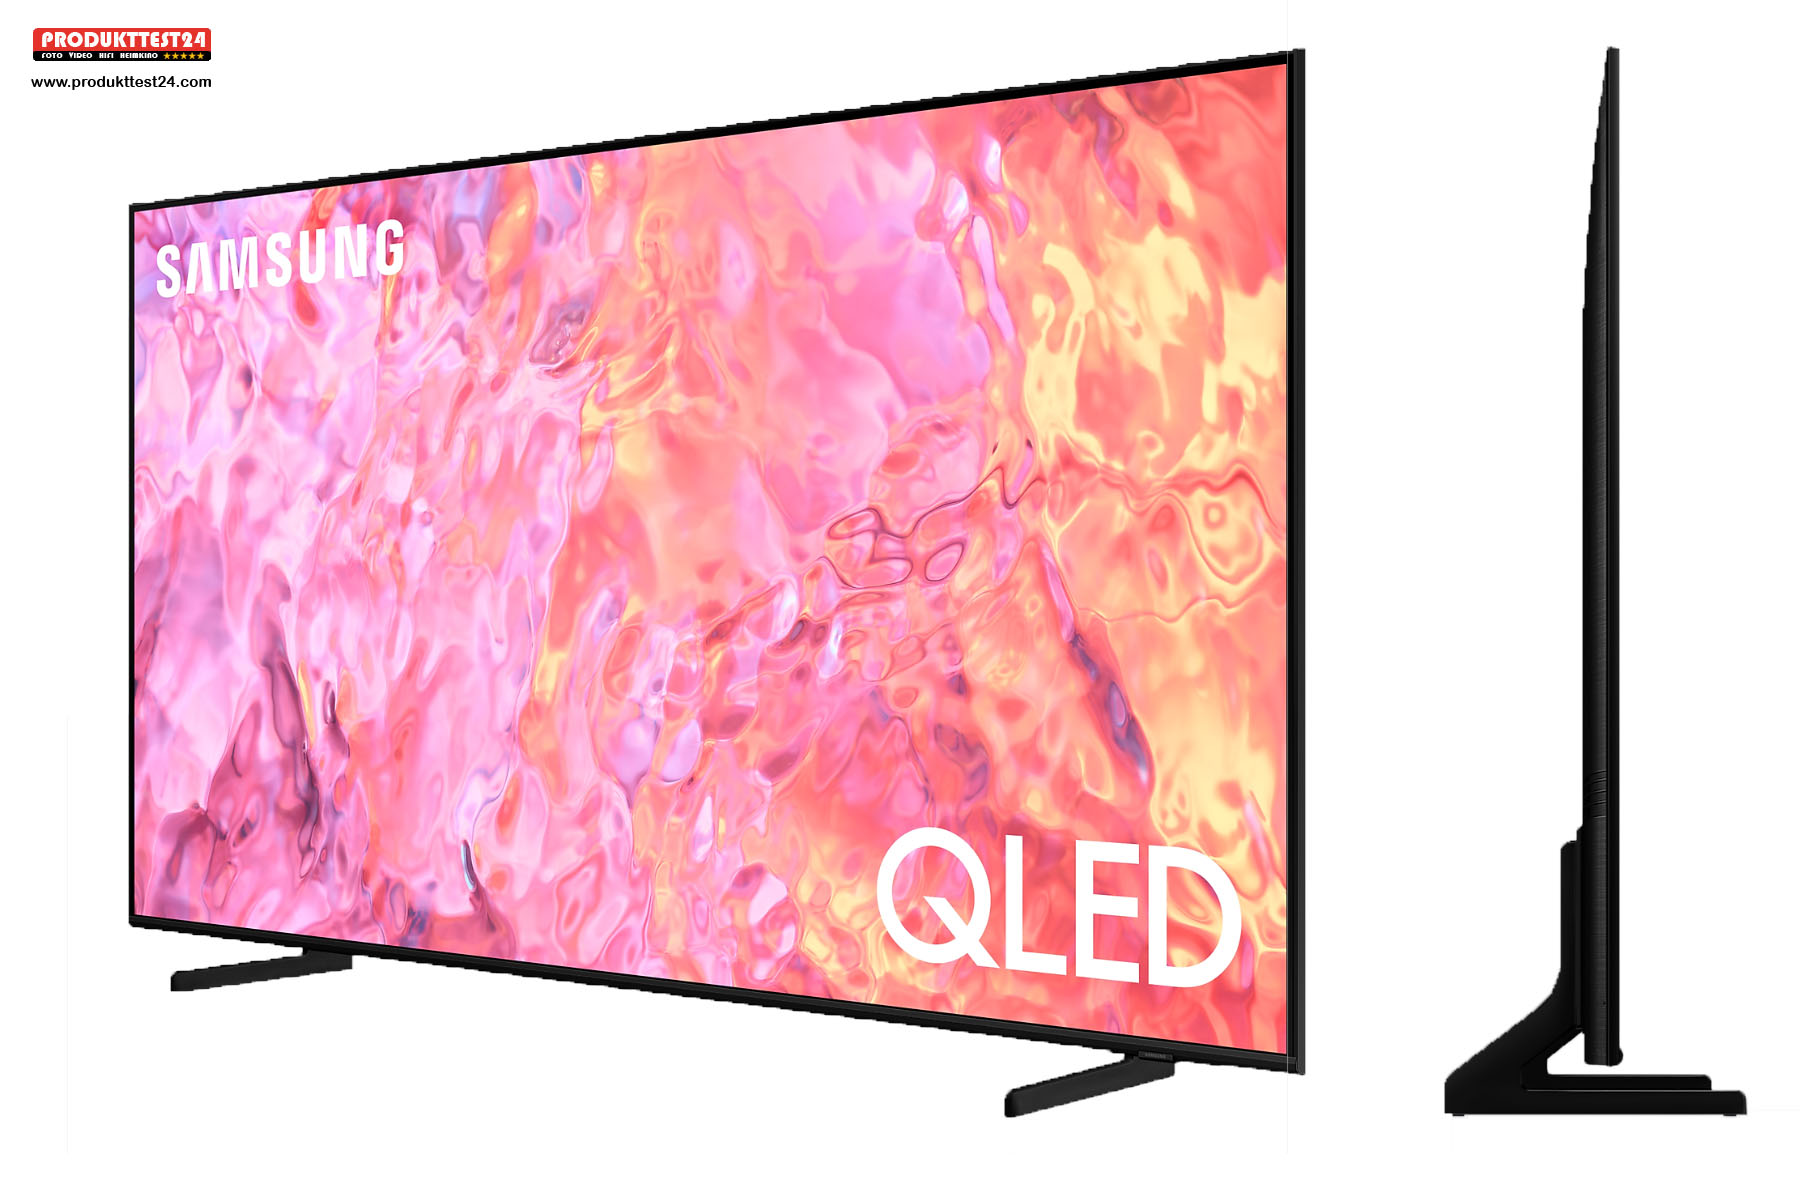 Der Samsung Q60C ist der günstigste 4K QLED-Fernseher von Samsung